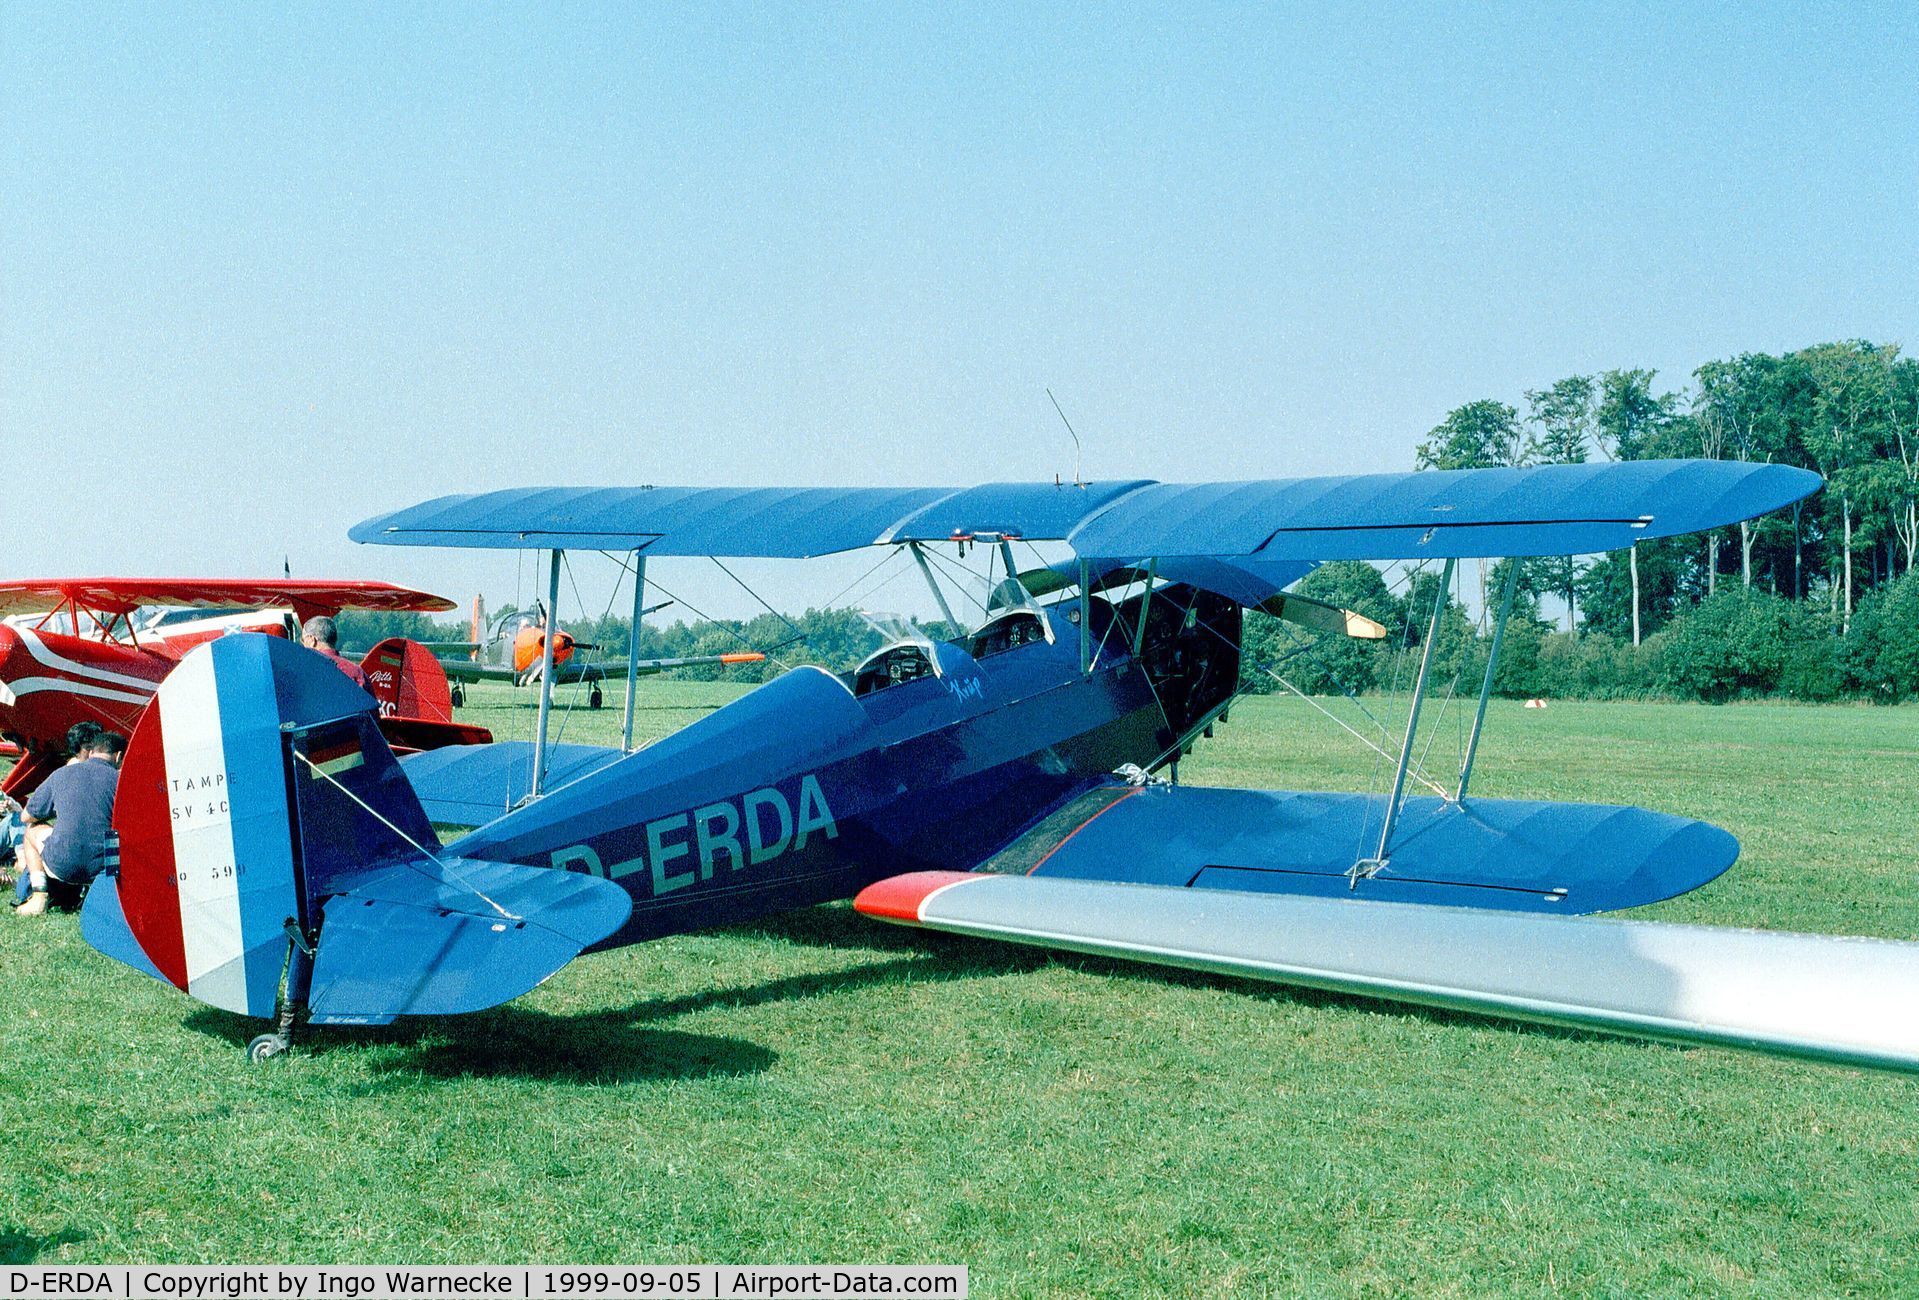 D-ERDA, 1947 Stampe-Vertongen SV-4C C/N 599, Stampe-Vertongen SV-4C at the Langenfeld airshow